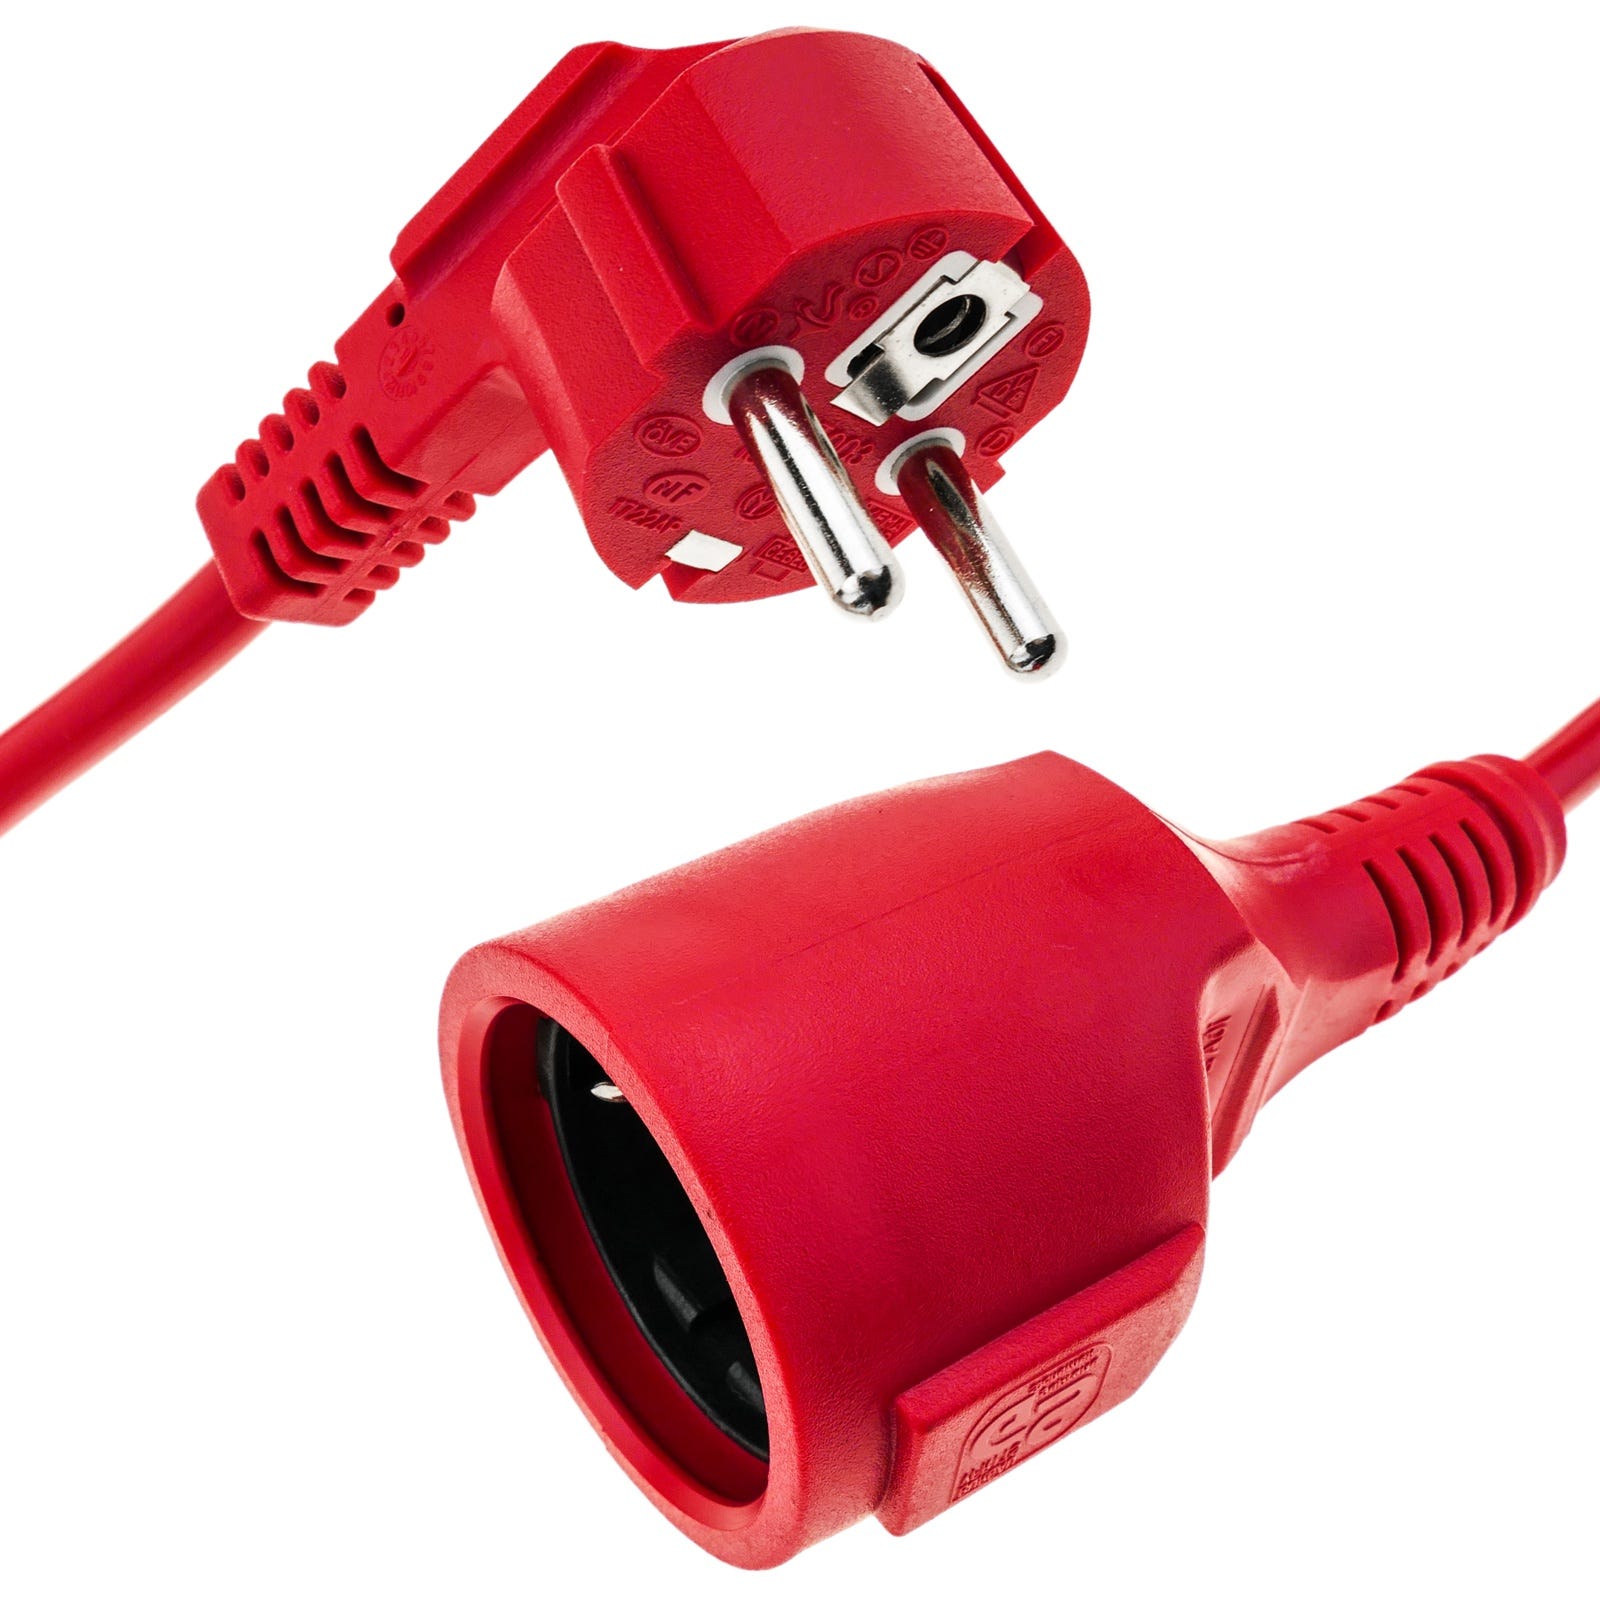 Alargador eléctrico de 10m Schuko macho a Schuko hembra color rojo